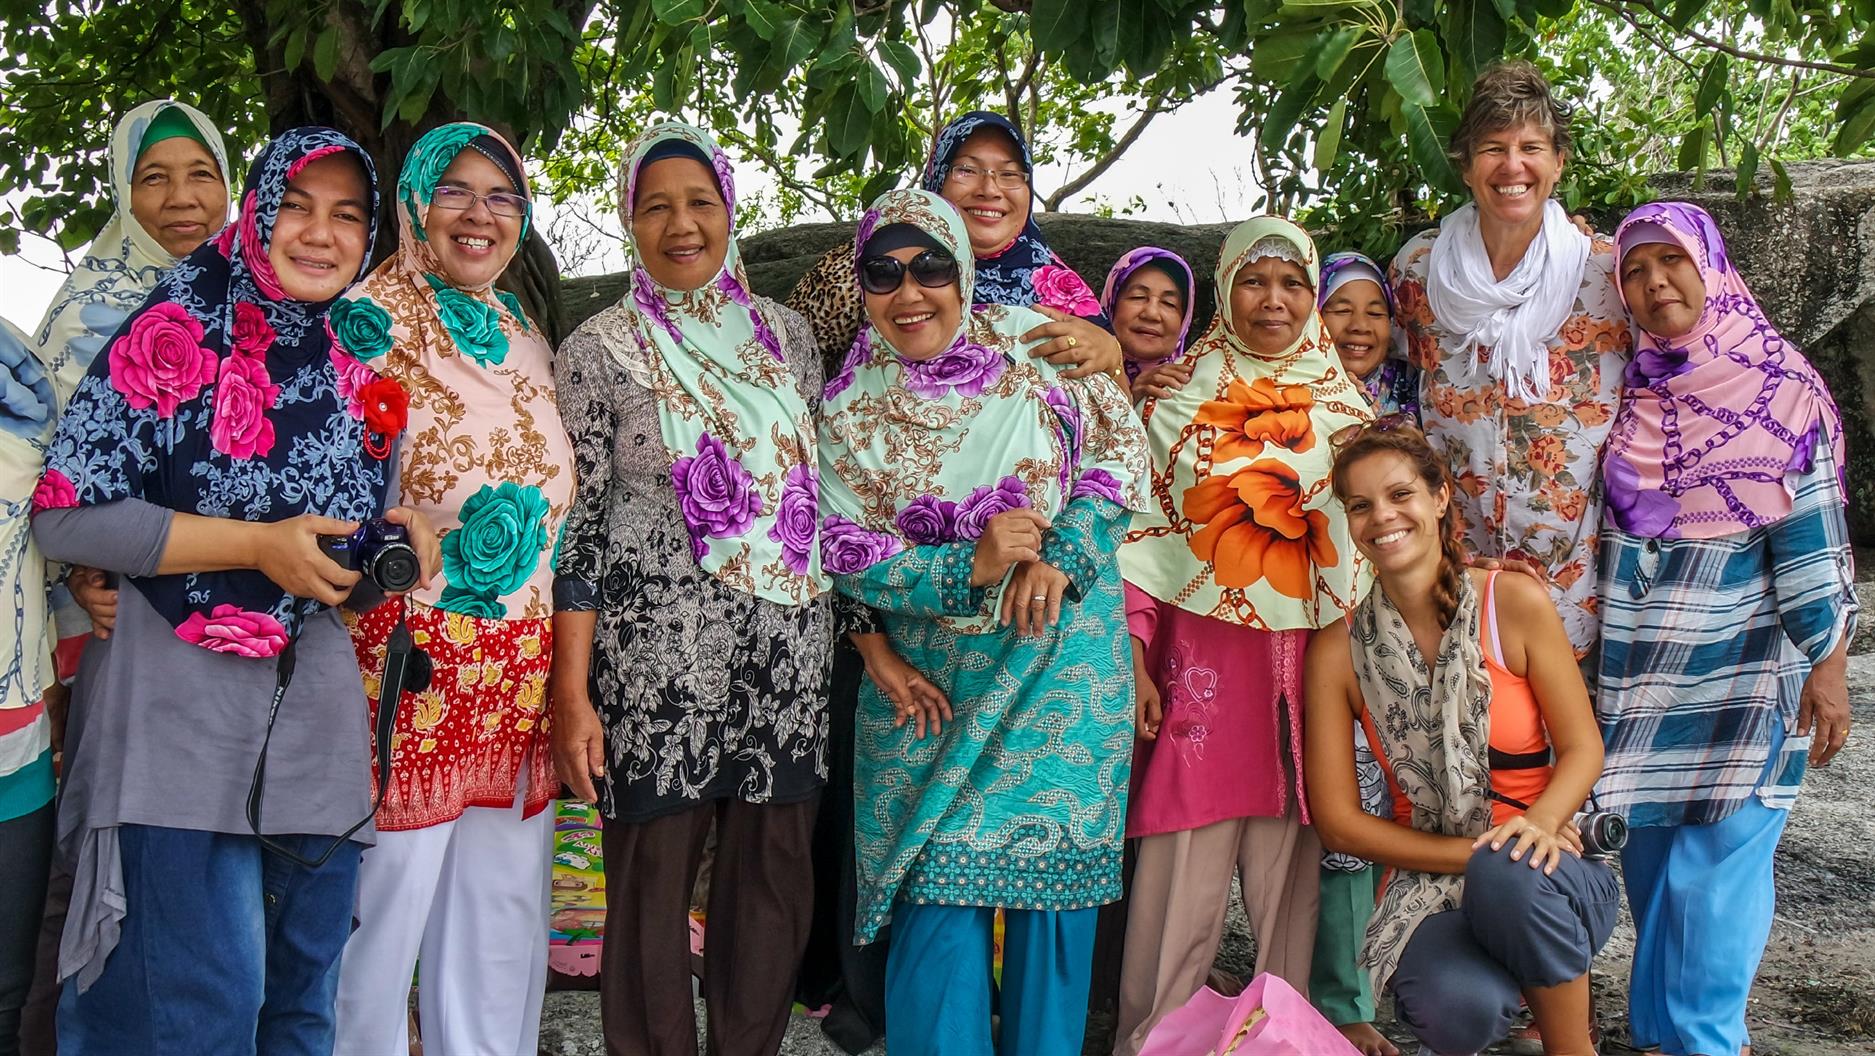 Die indonesischen Damen am Strand von Belitung wollen unbedingt ein Bild mit uns. Also nutzen wir die Gelegenheit und knipsen ebenfalls ein Bild mit uns :-)) ...